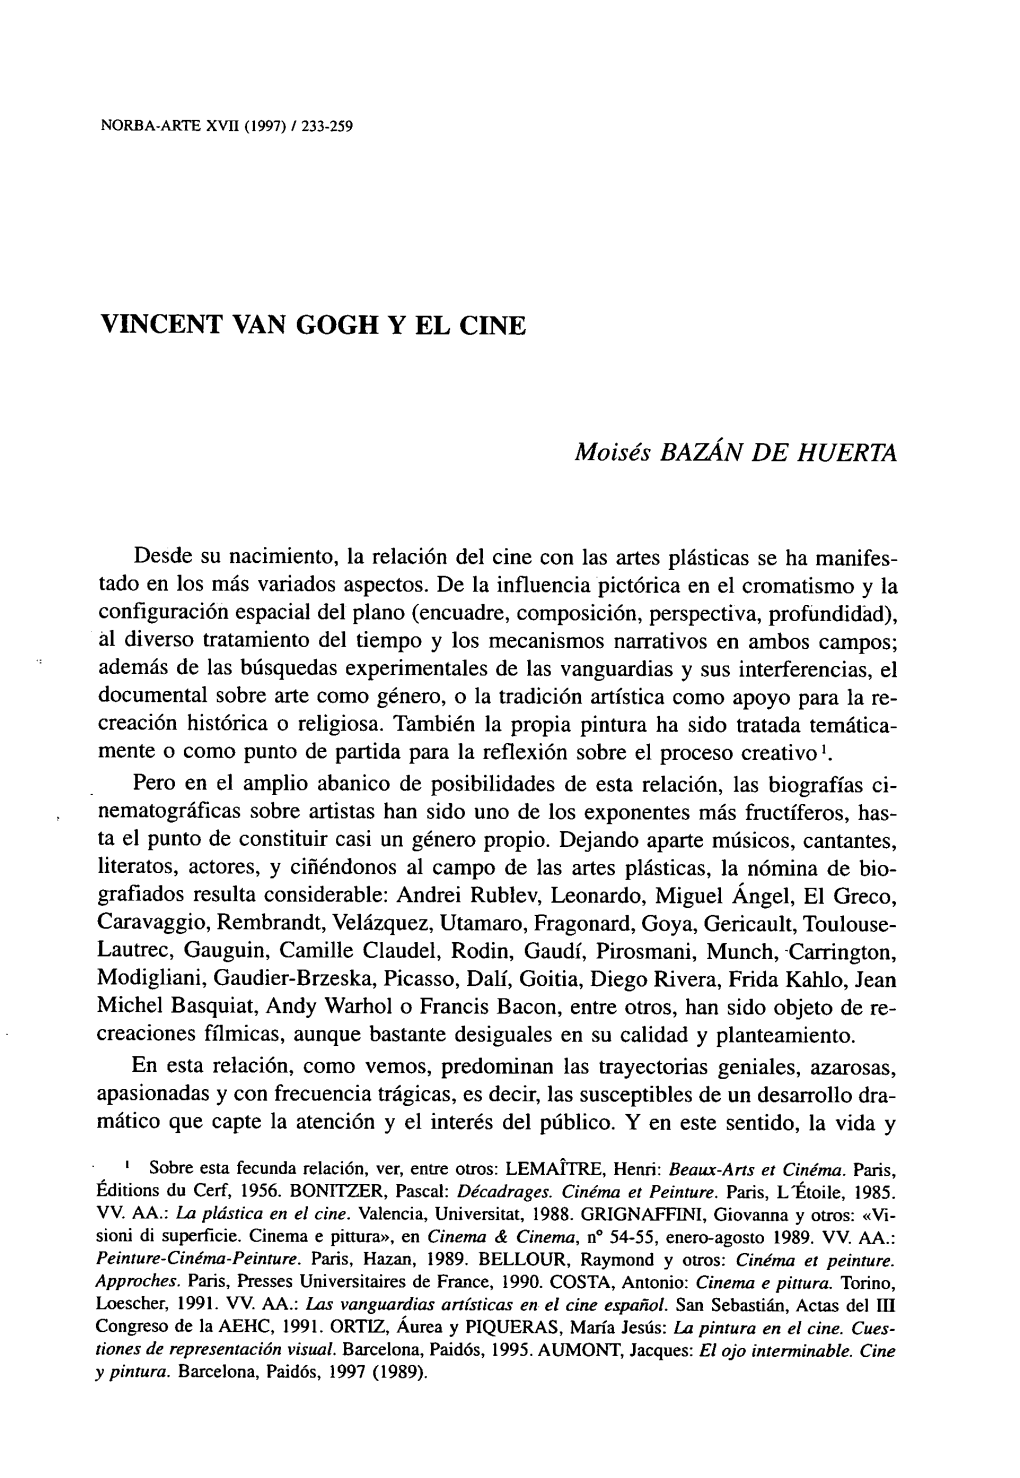 VINCENT VAN GOGH Y EL CINE Moisés BAZÁN DE HUERTA Desde